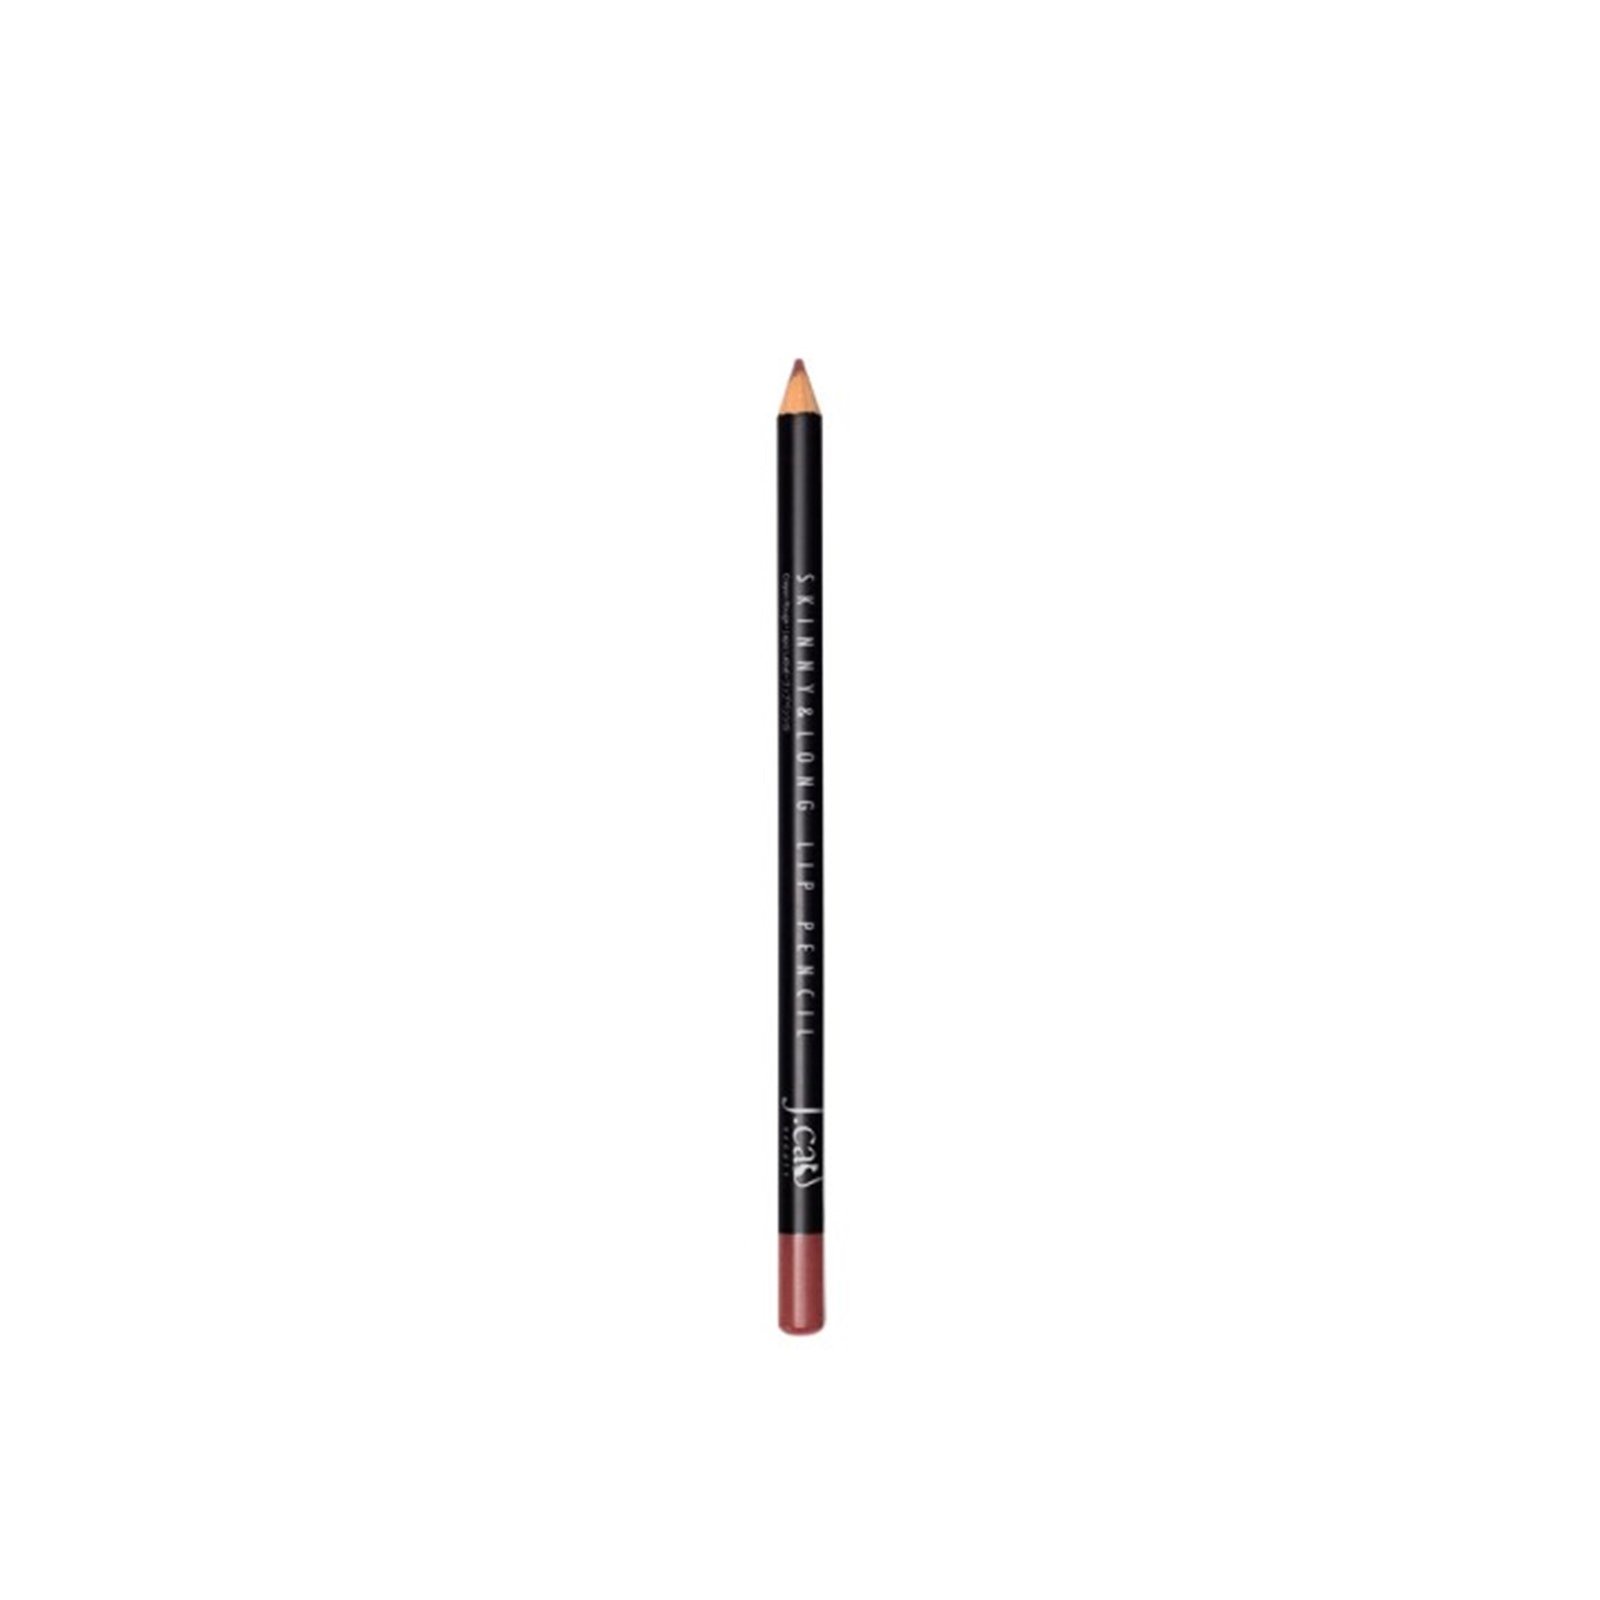 J.Cat Skinny & Long Lip Pencil 103 Puce 2g (0.08 oz)